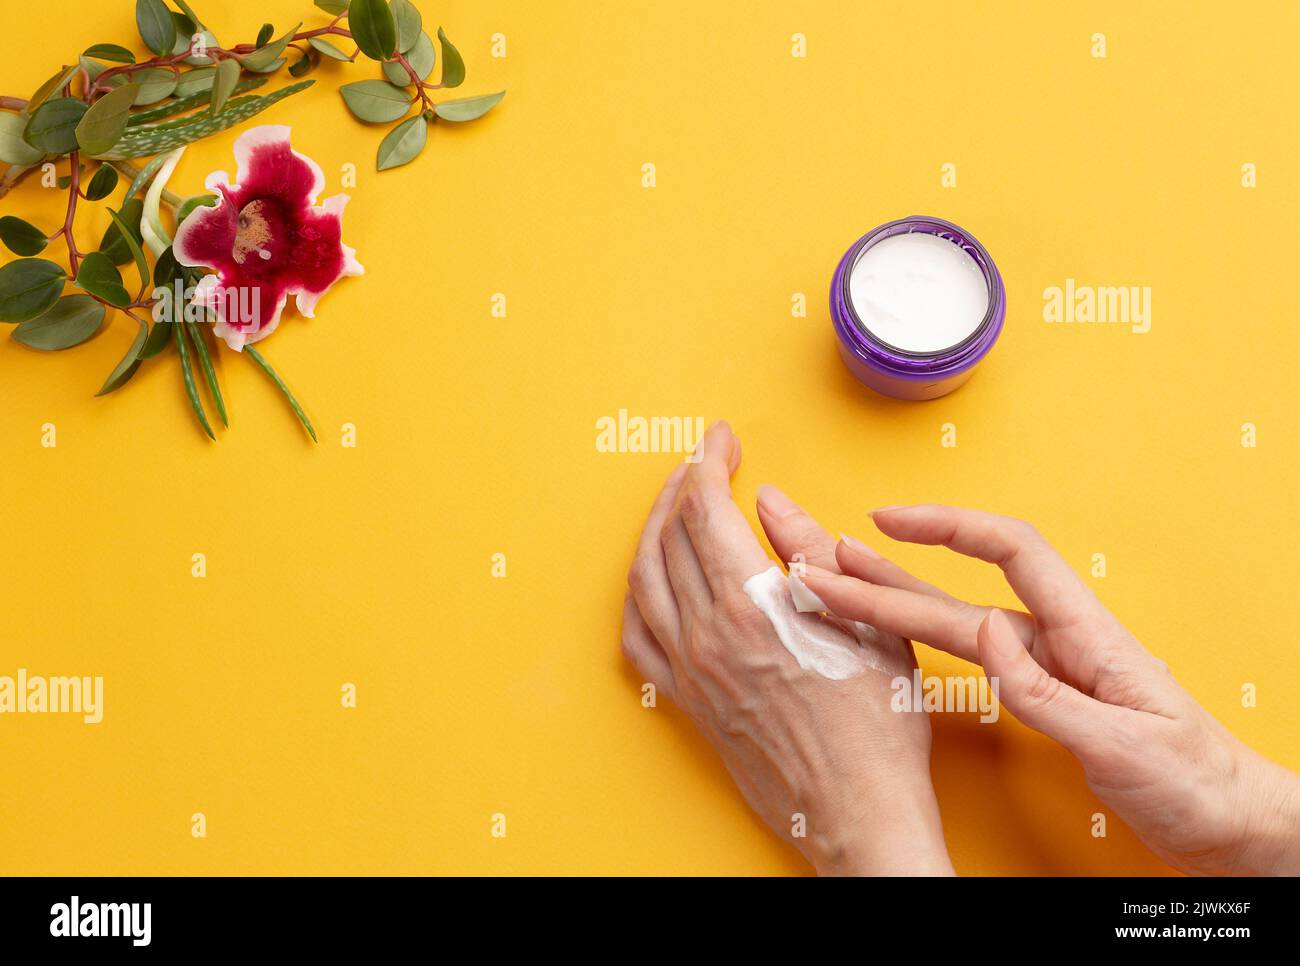 Les mains des femmes appliquent de la crème sur fond jaune avec espace de copie. Concept de cosmétologie et de soins à domicile. Masques naturels biologiques sains Banque D'Images